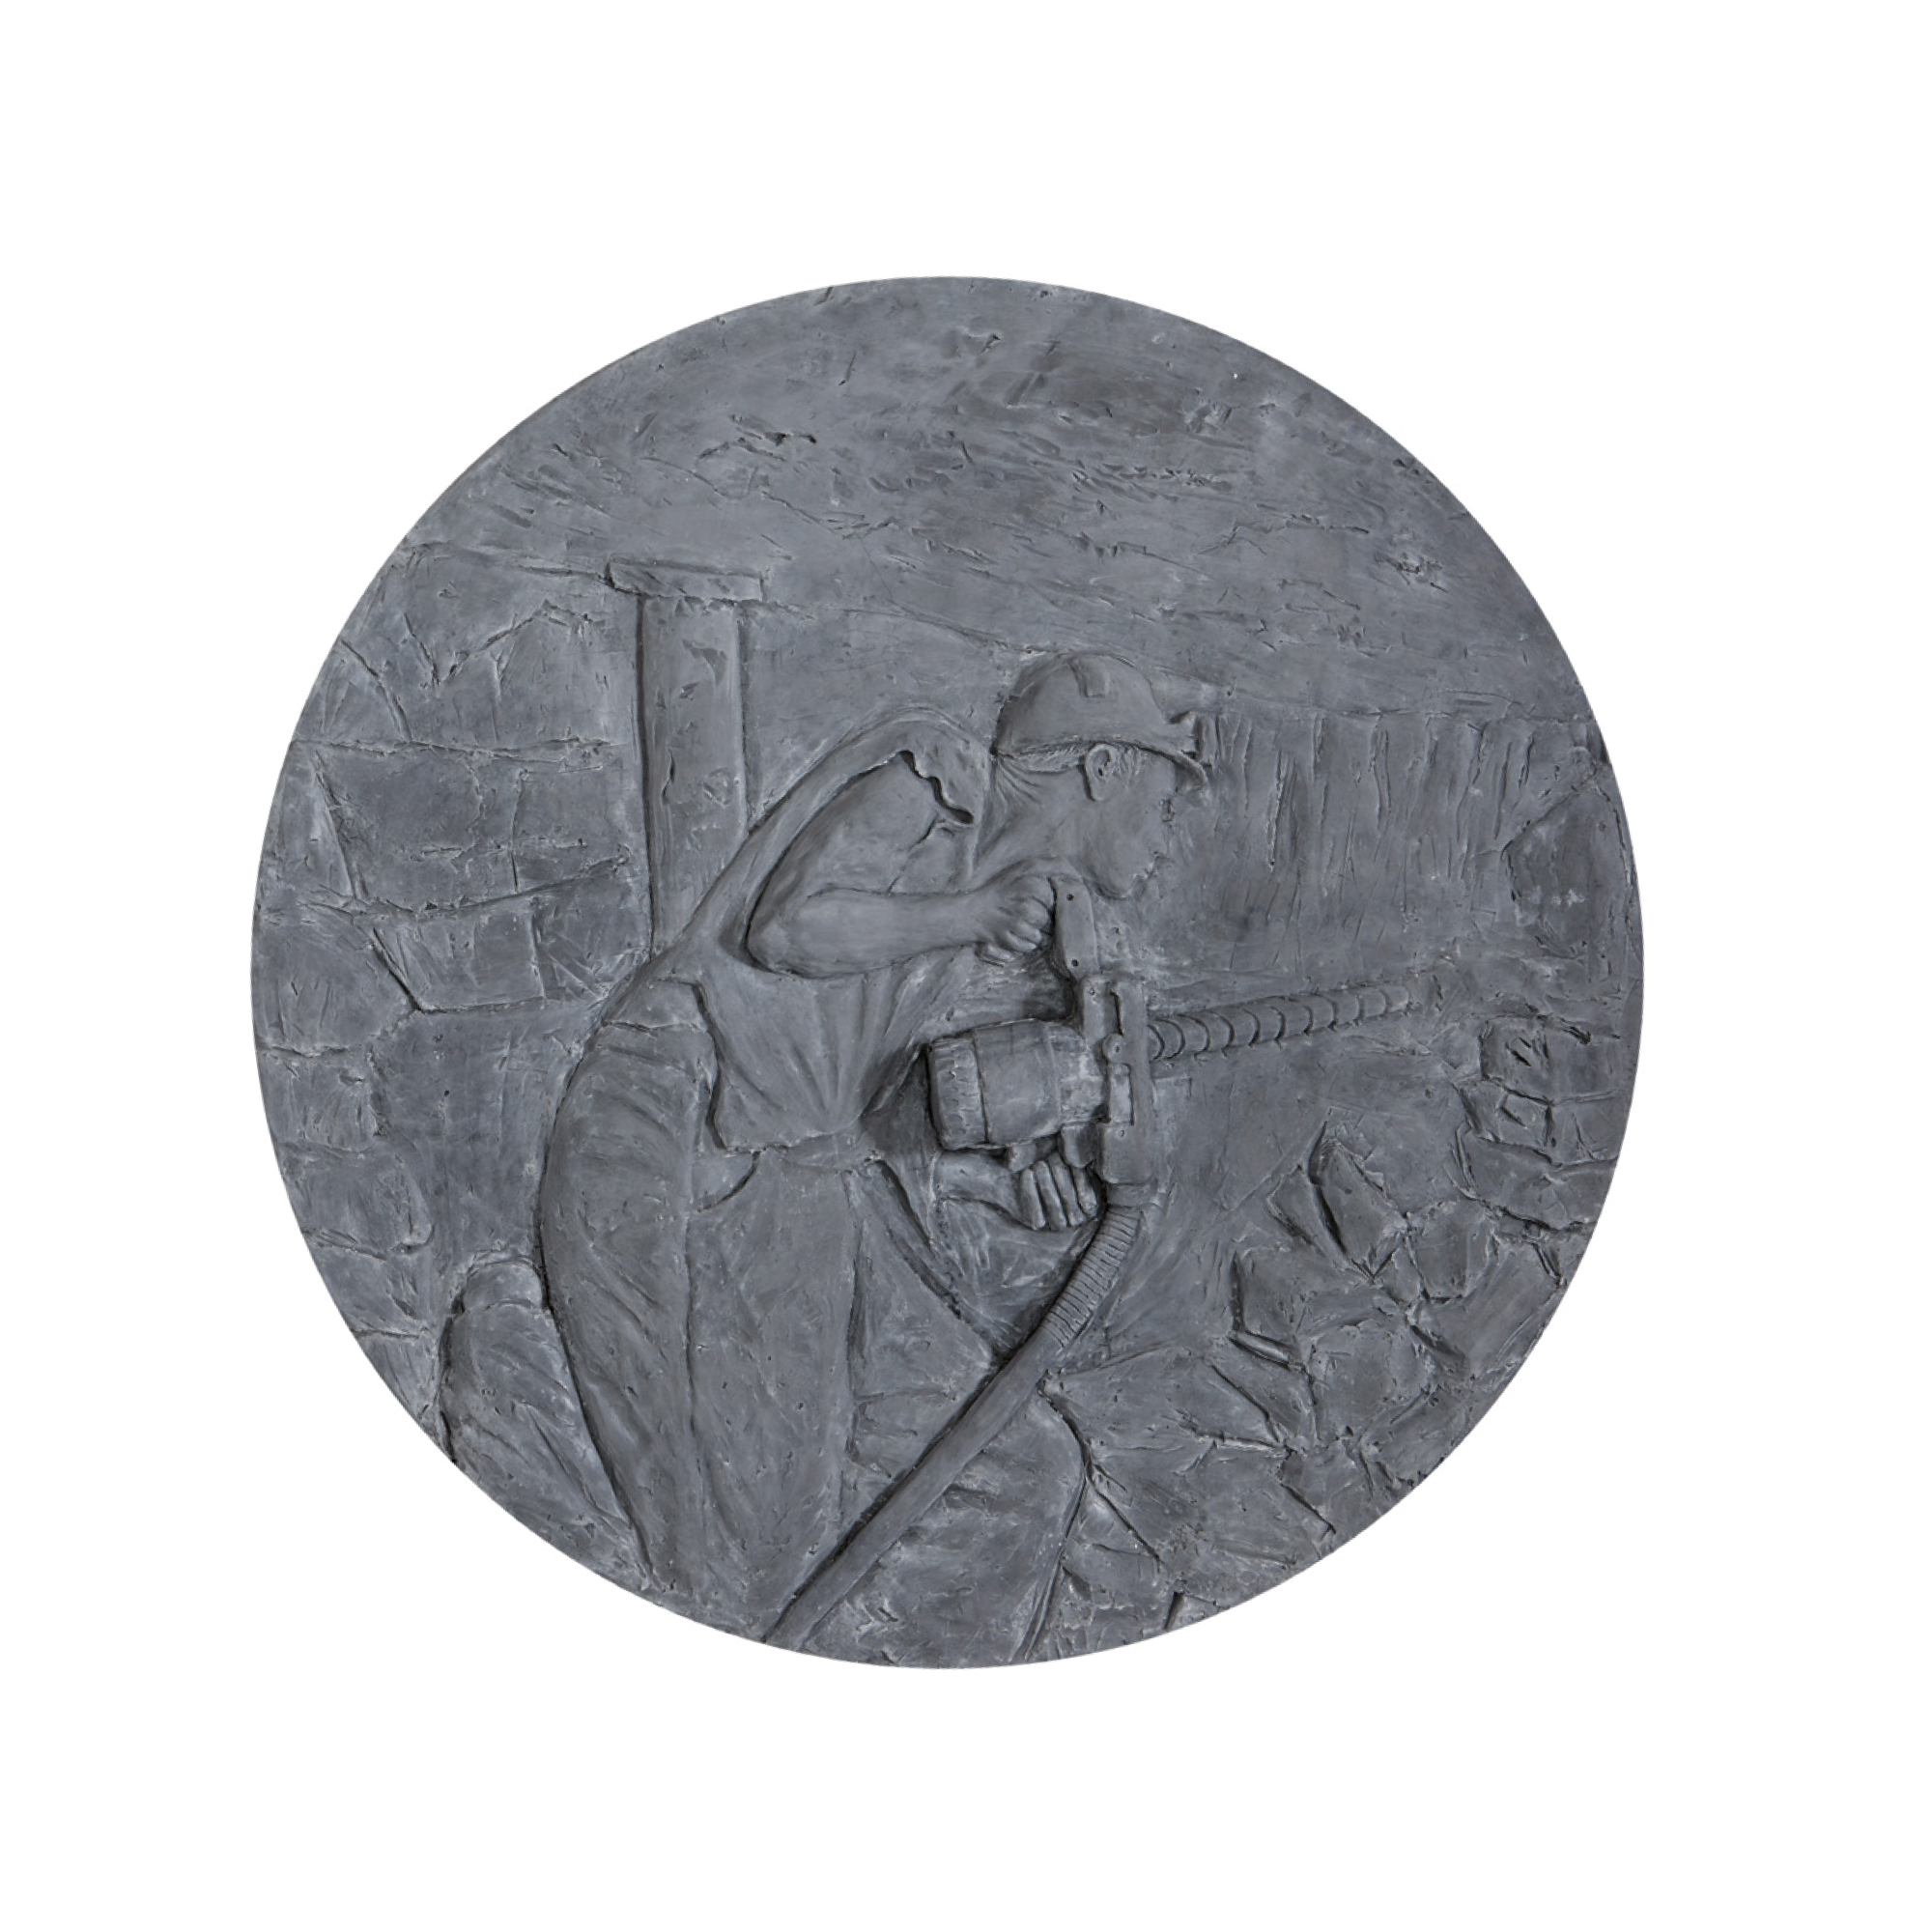 MINE, 2017Bas-relief en béton coloré Edition 1/3 + 2 EA Diamètre 200 cm